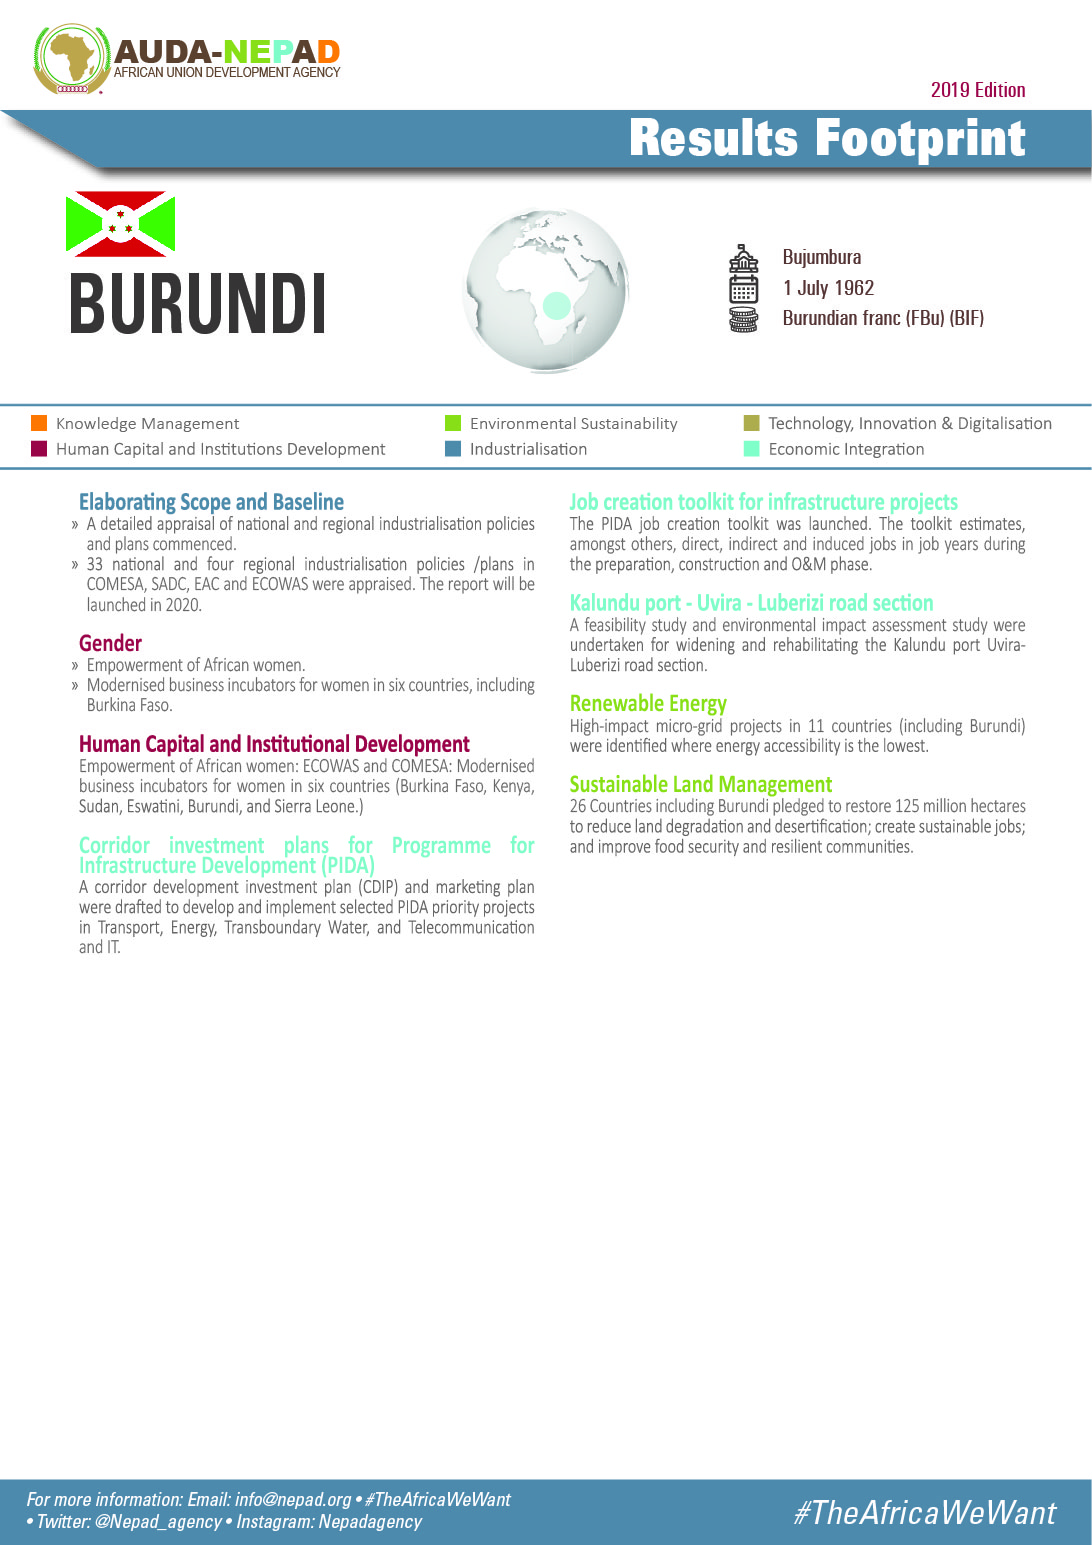 2019 AUDA-NEPAD Footprint: Country Profiles: Burundi